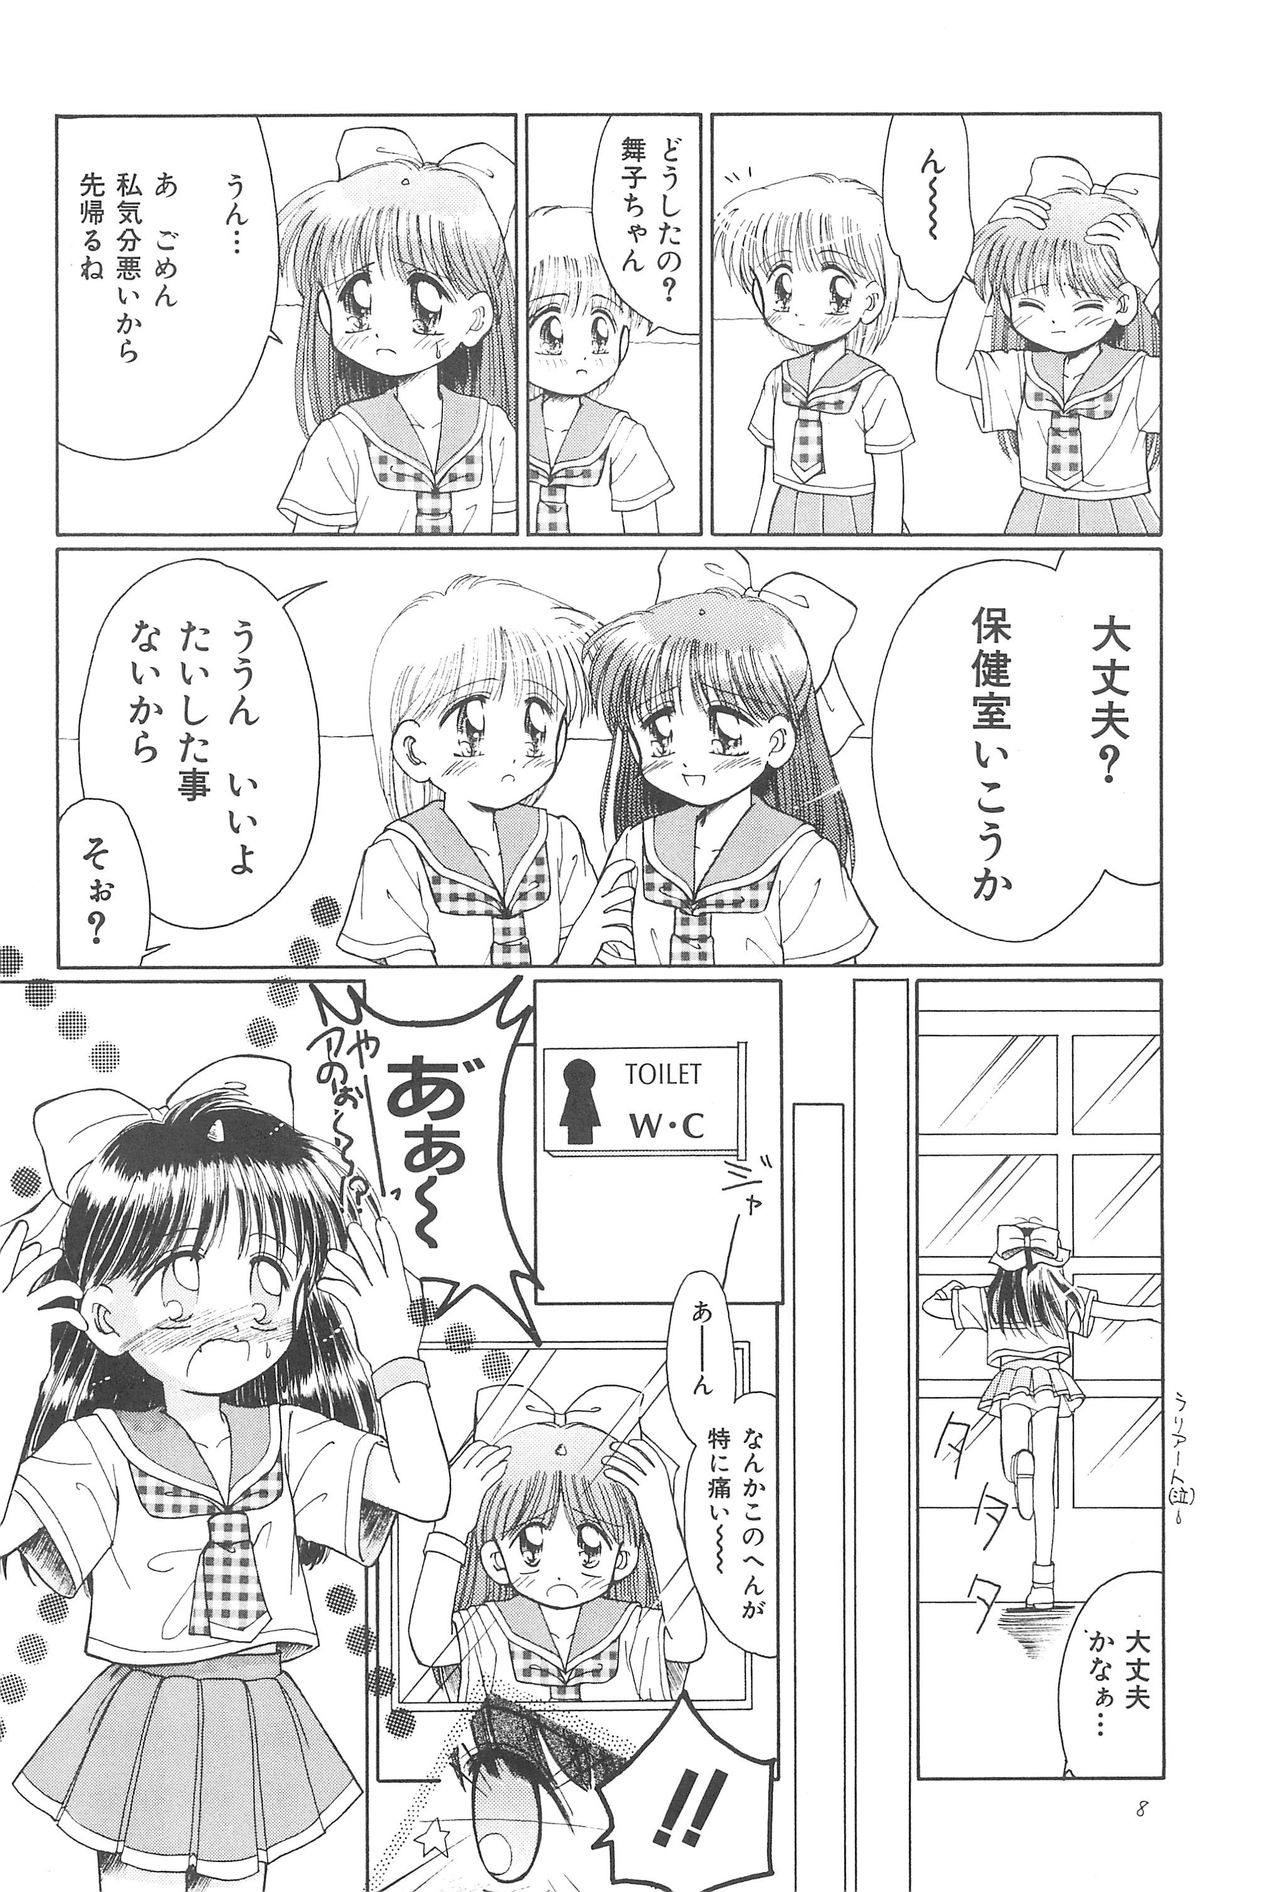 (CR23) [PHOENIX PROJECT (Kamikaze Makoto)] Okosama Lunch Original 1 page 10 full